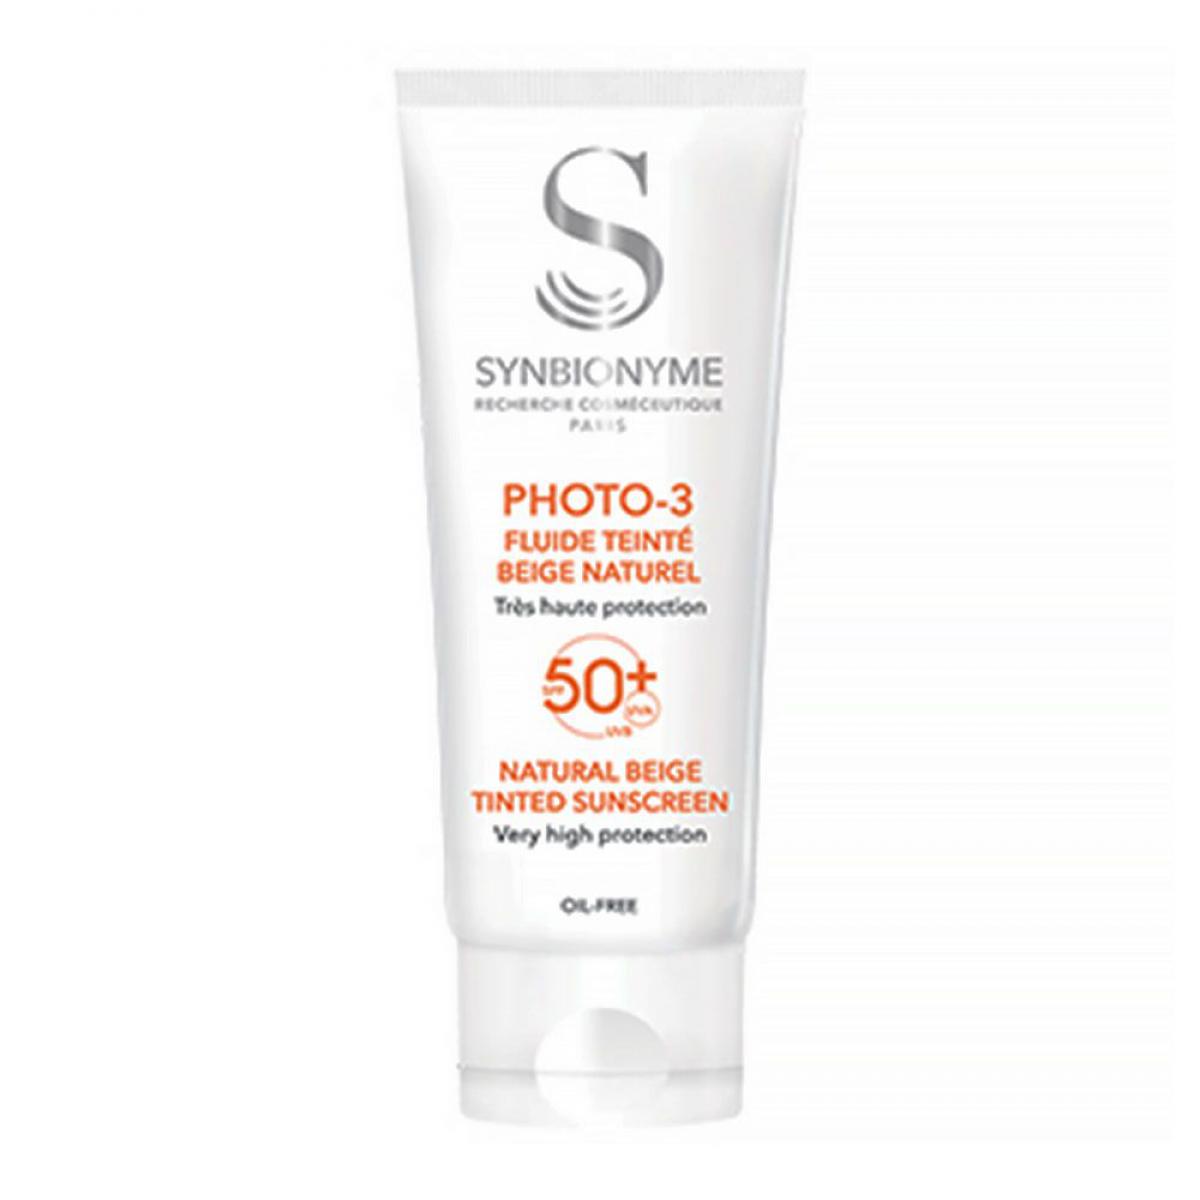 ضد آفتاب رنگی فتو 3 +SPF50 حجم 40 میل -  Photo3 Invisible Sunscreen SPF50 SYNBIONYME 